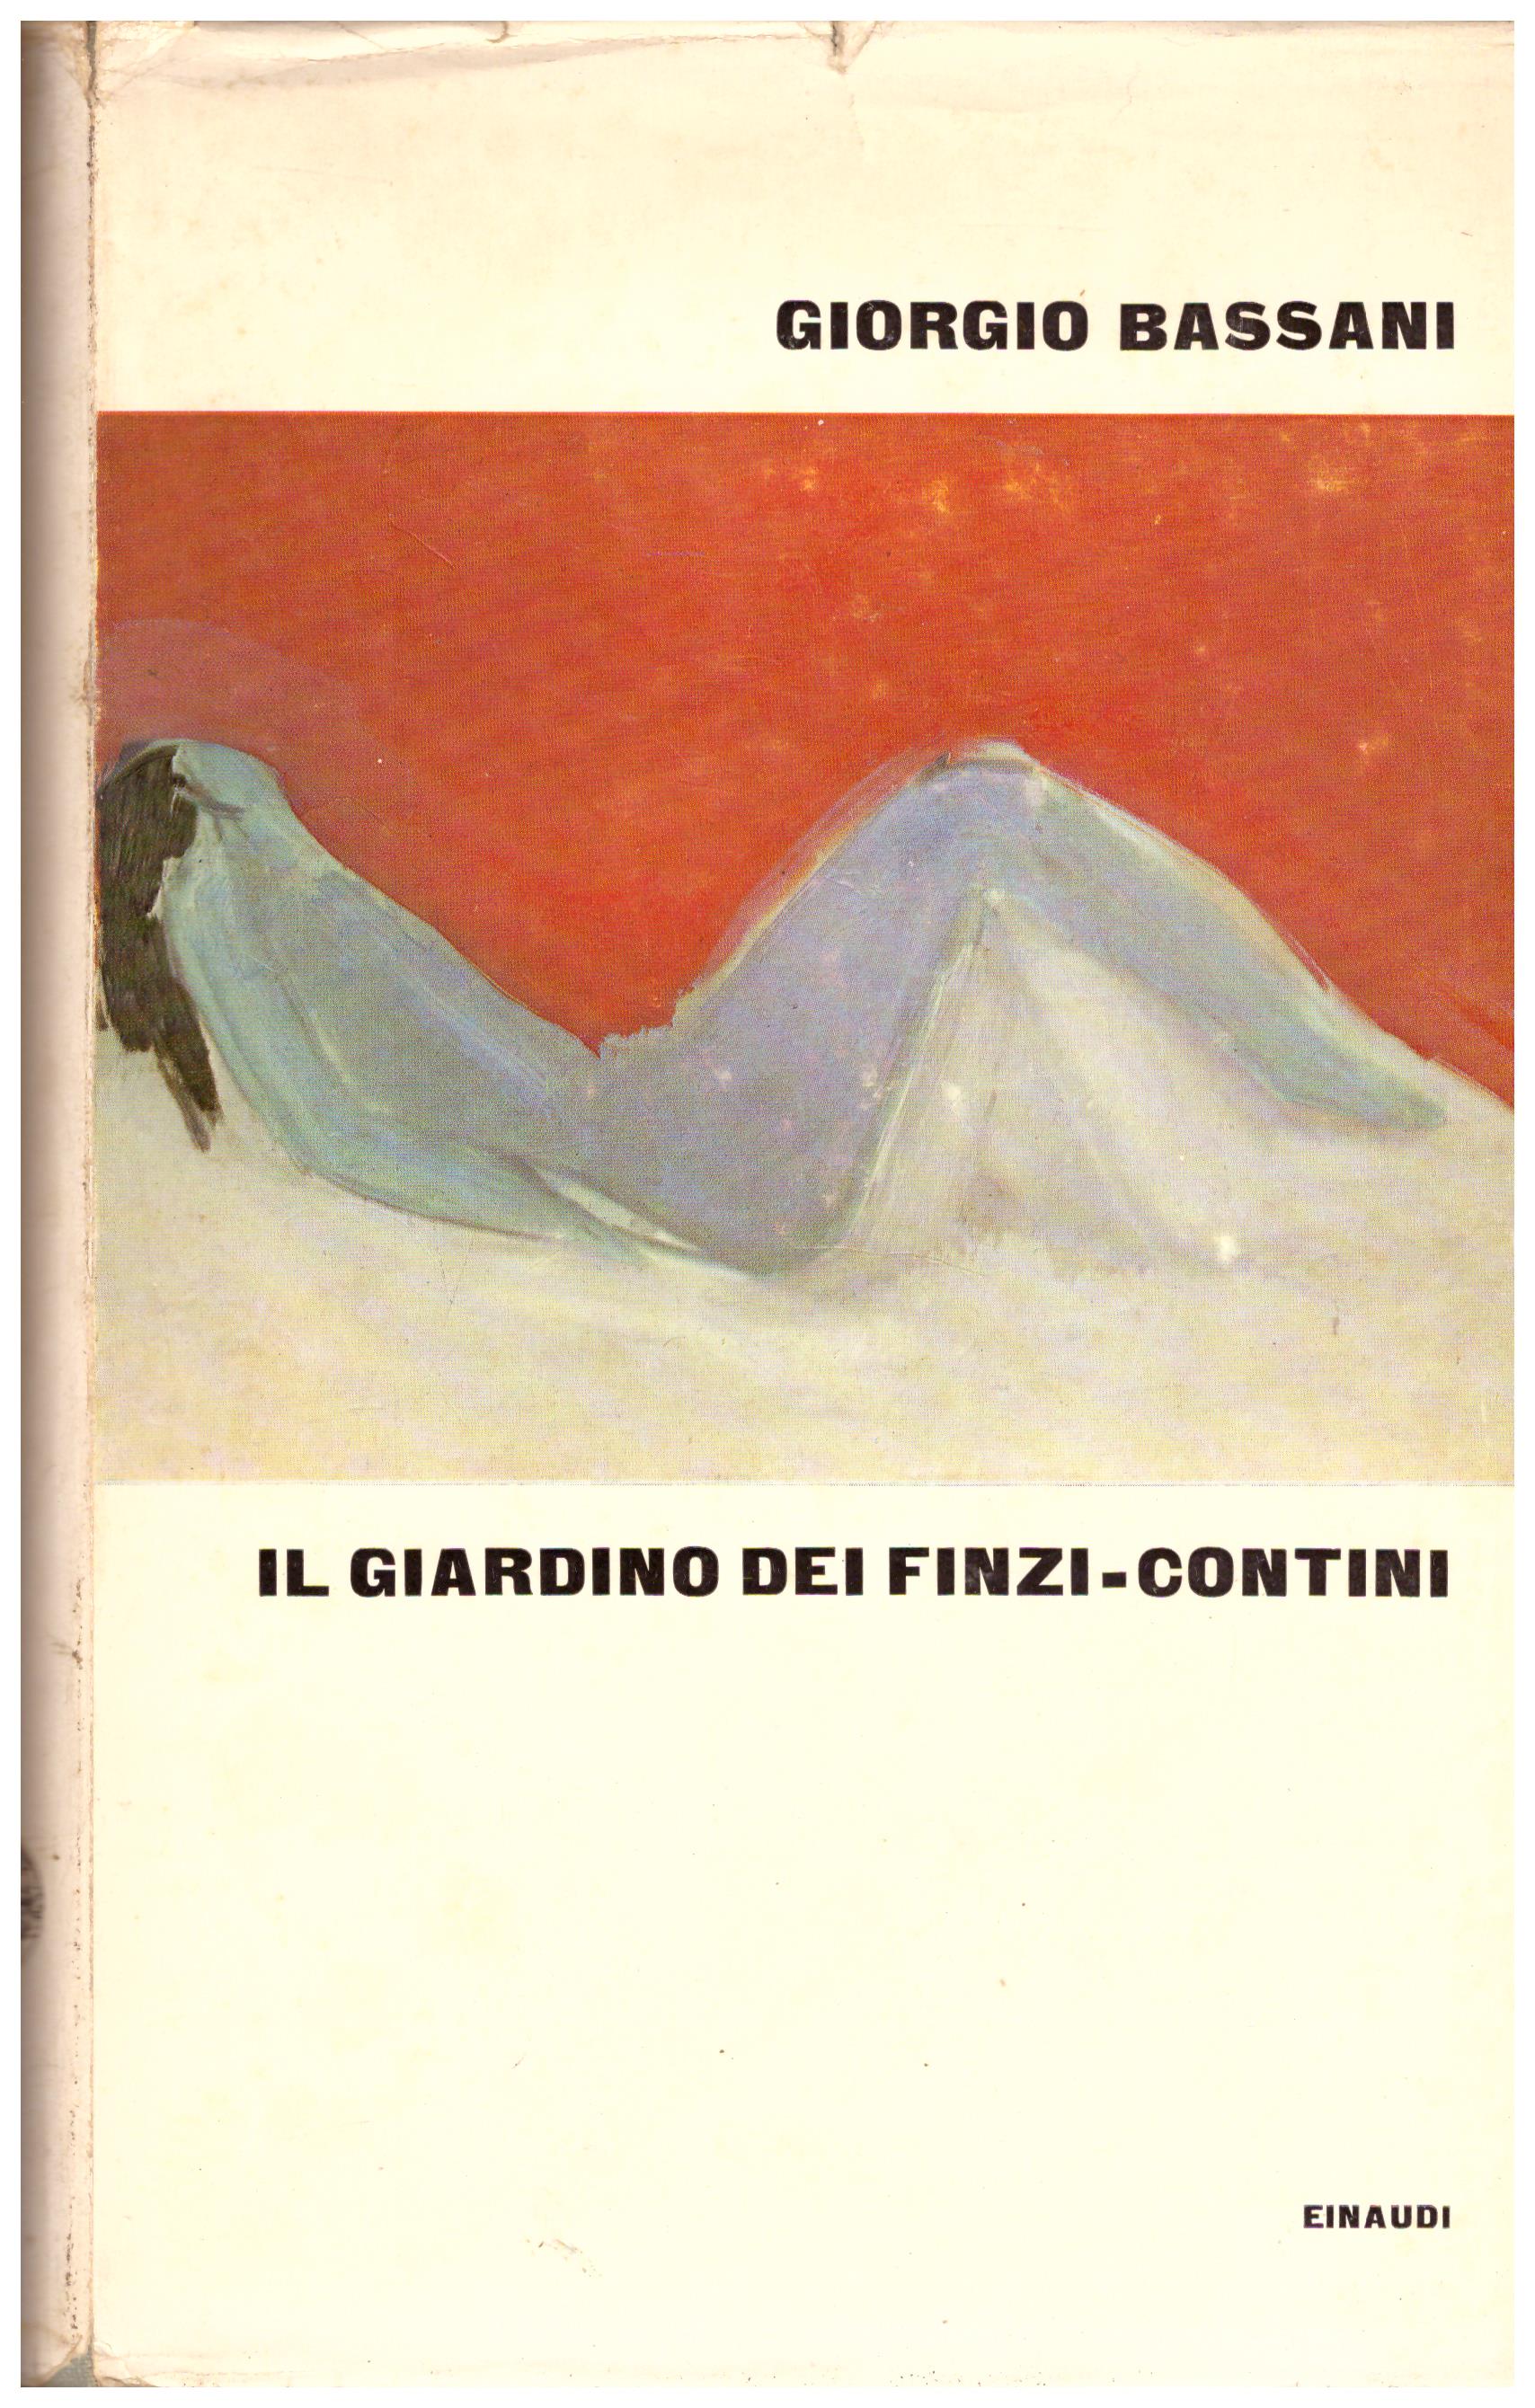 Titolo: Il giardino dei Finzi-Corinzi Autore: Giorgio Bassani Editore: Einaudi, 1962